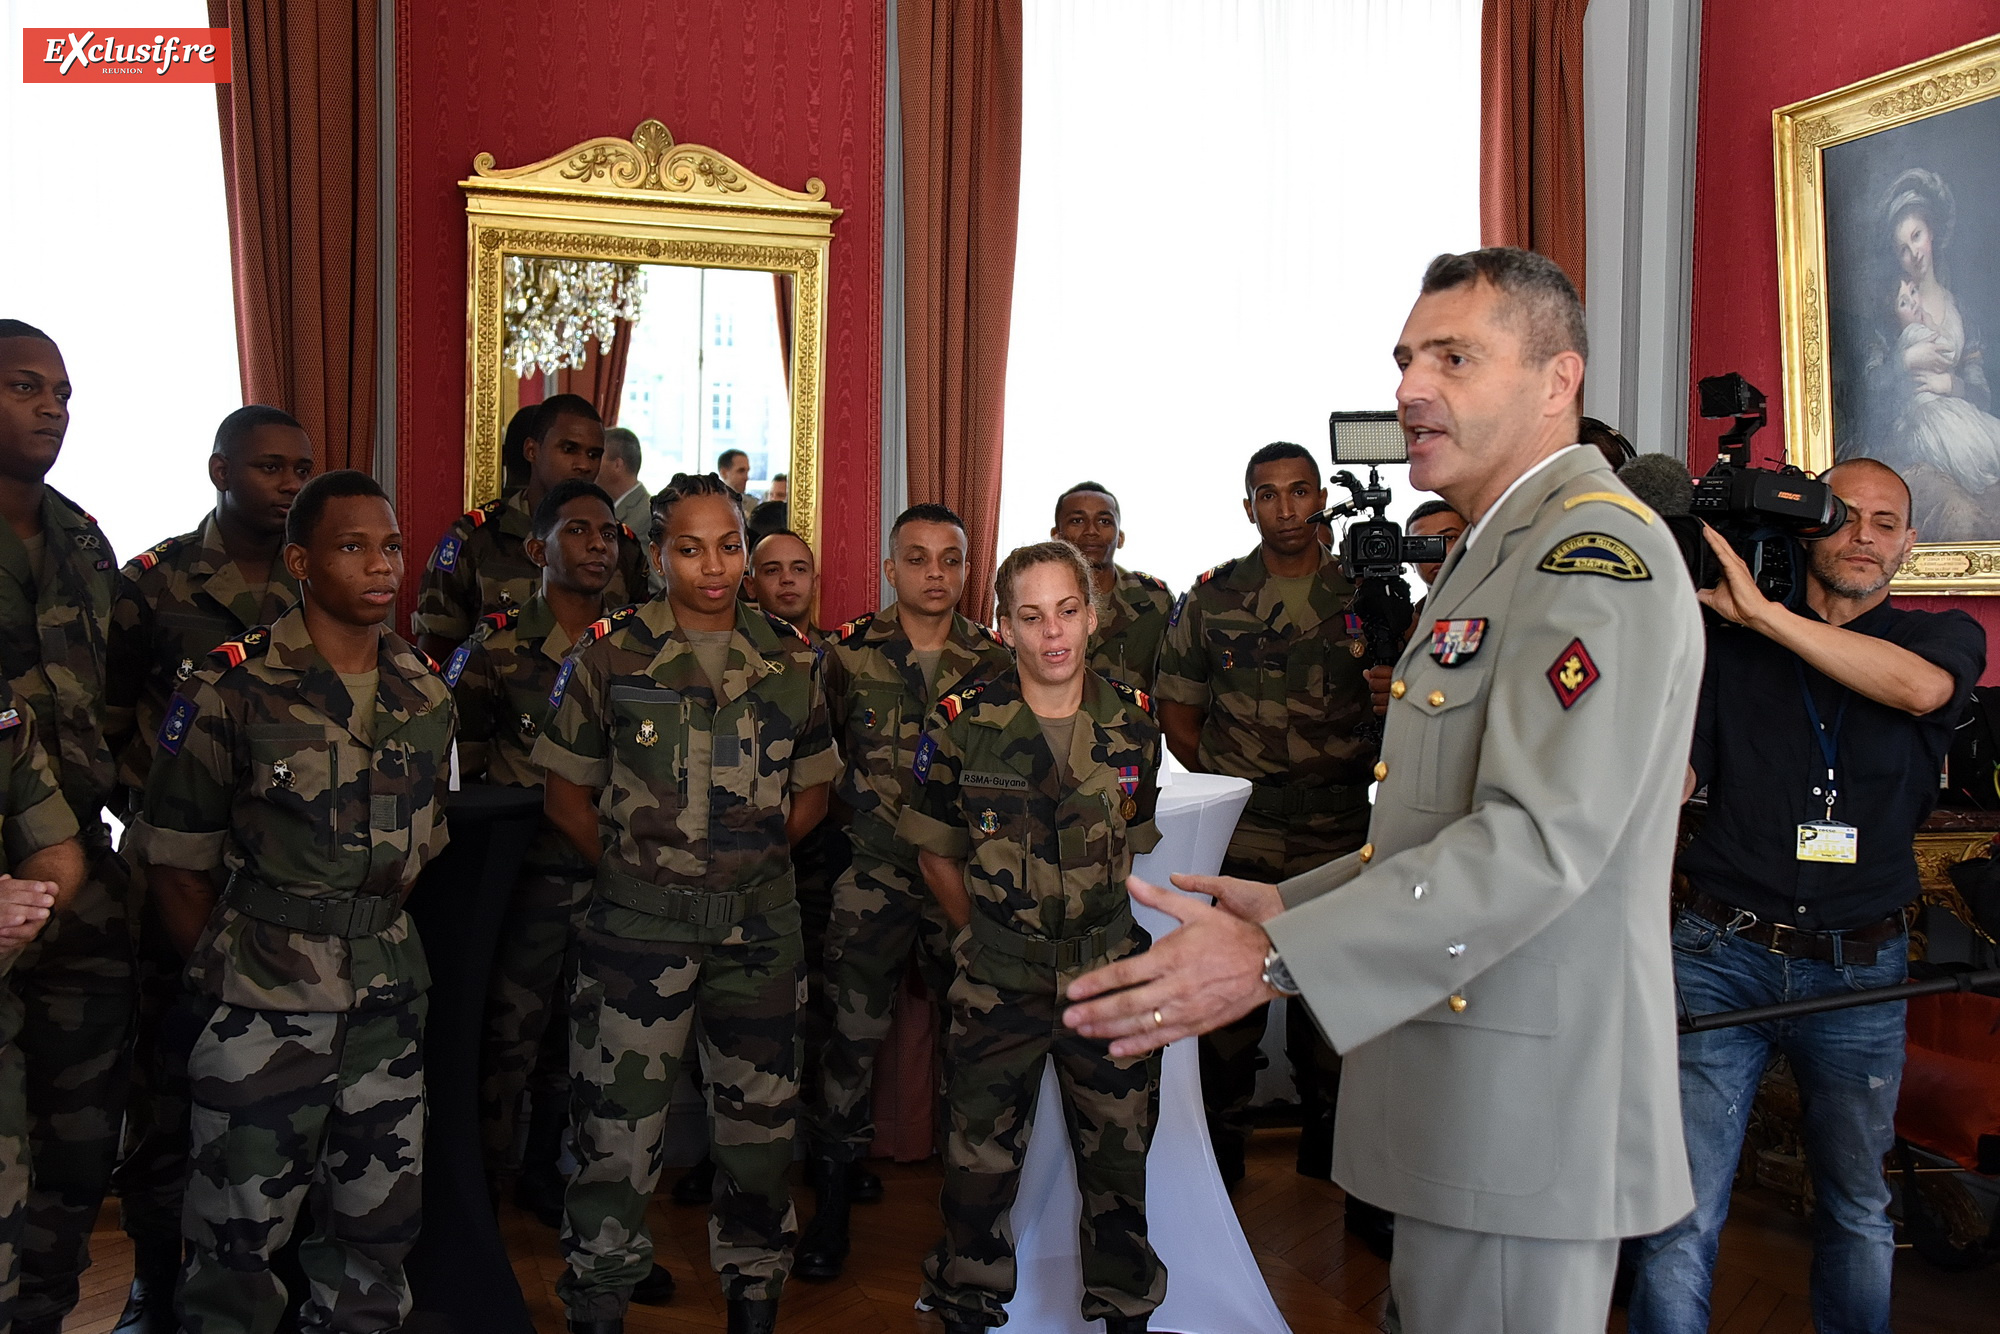 Le général Thierry Laval, commandant le SMA, a accueilli la délégation dans les salons du ministère